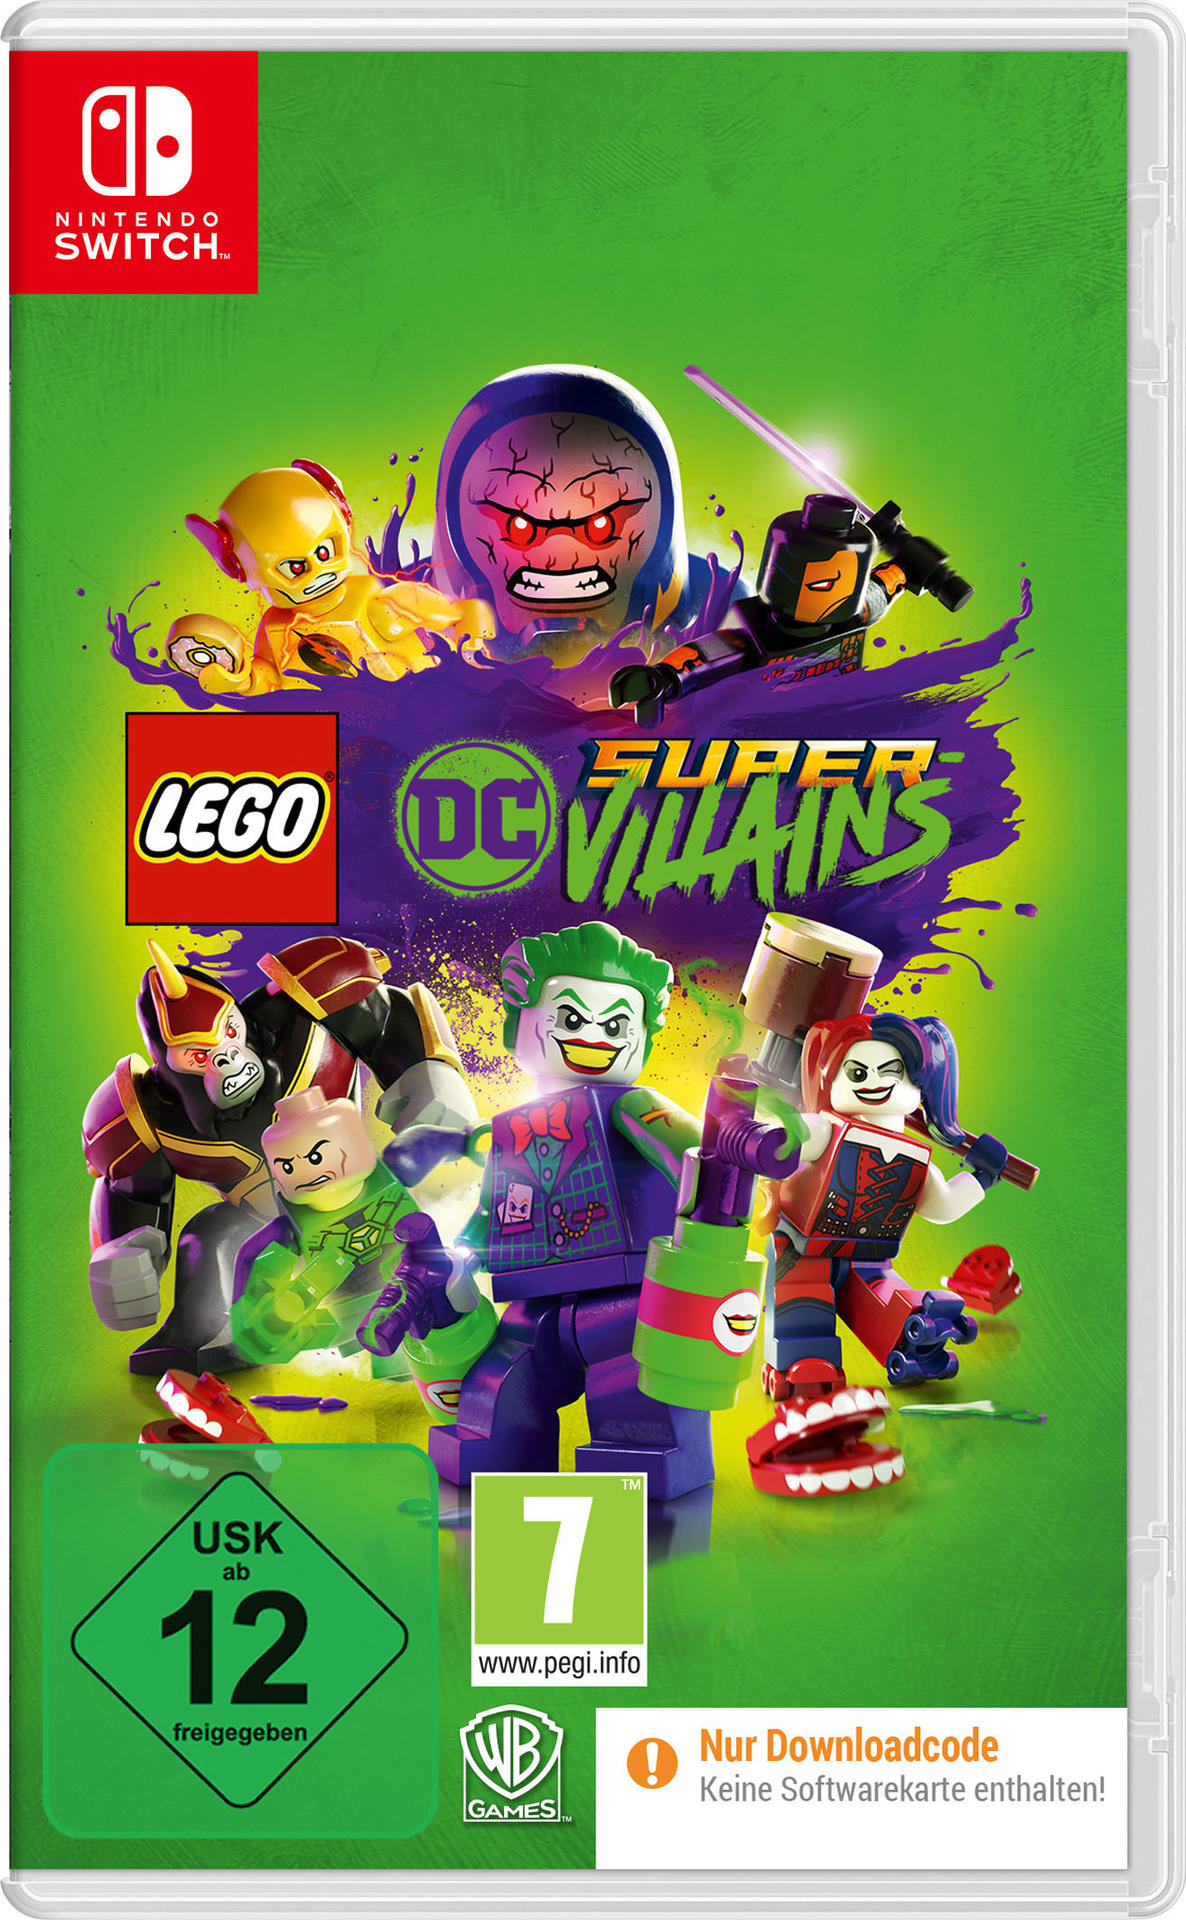 - [Nintendo DC der Switch] in Box) Super-Villains (Code LEGO